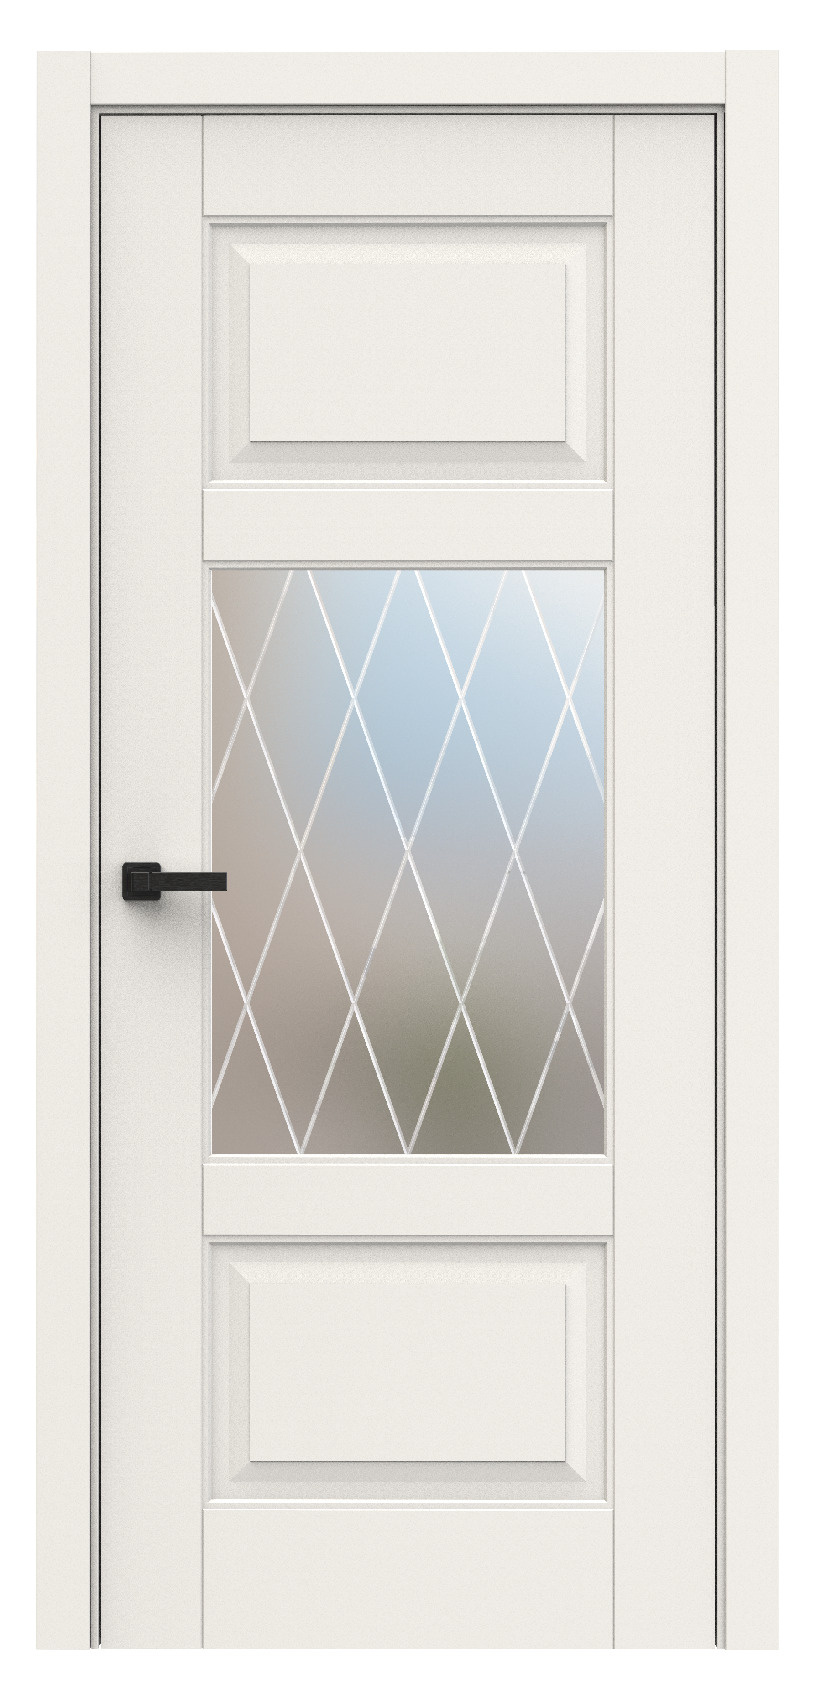 Questdoors Межкомнатная дверь QL8, арт. 18008 - фото №1